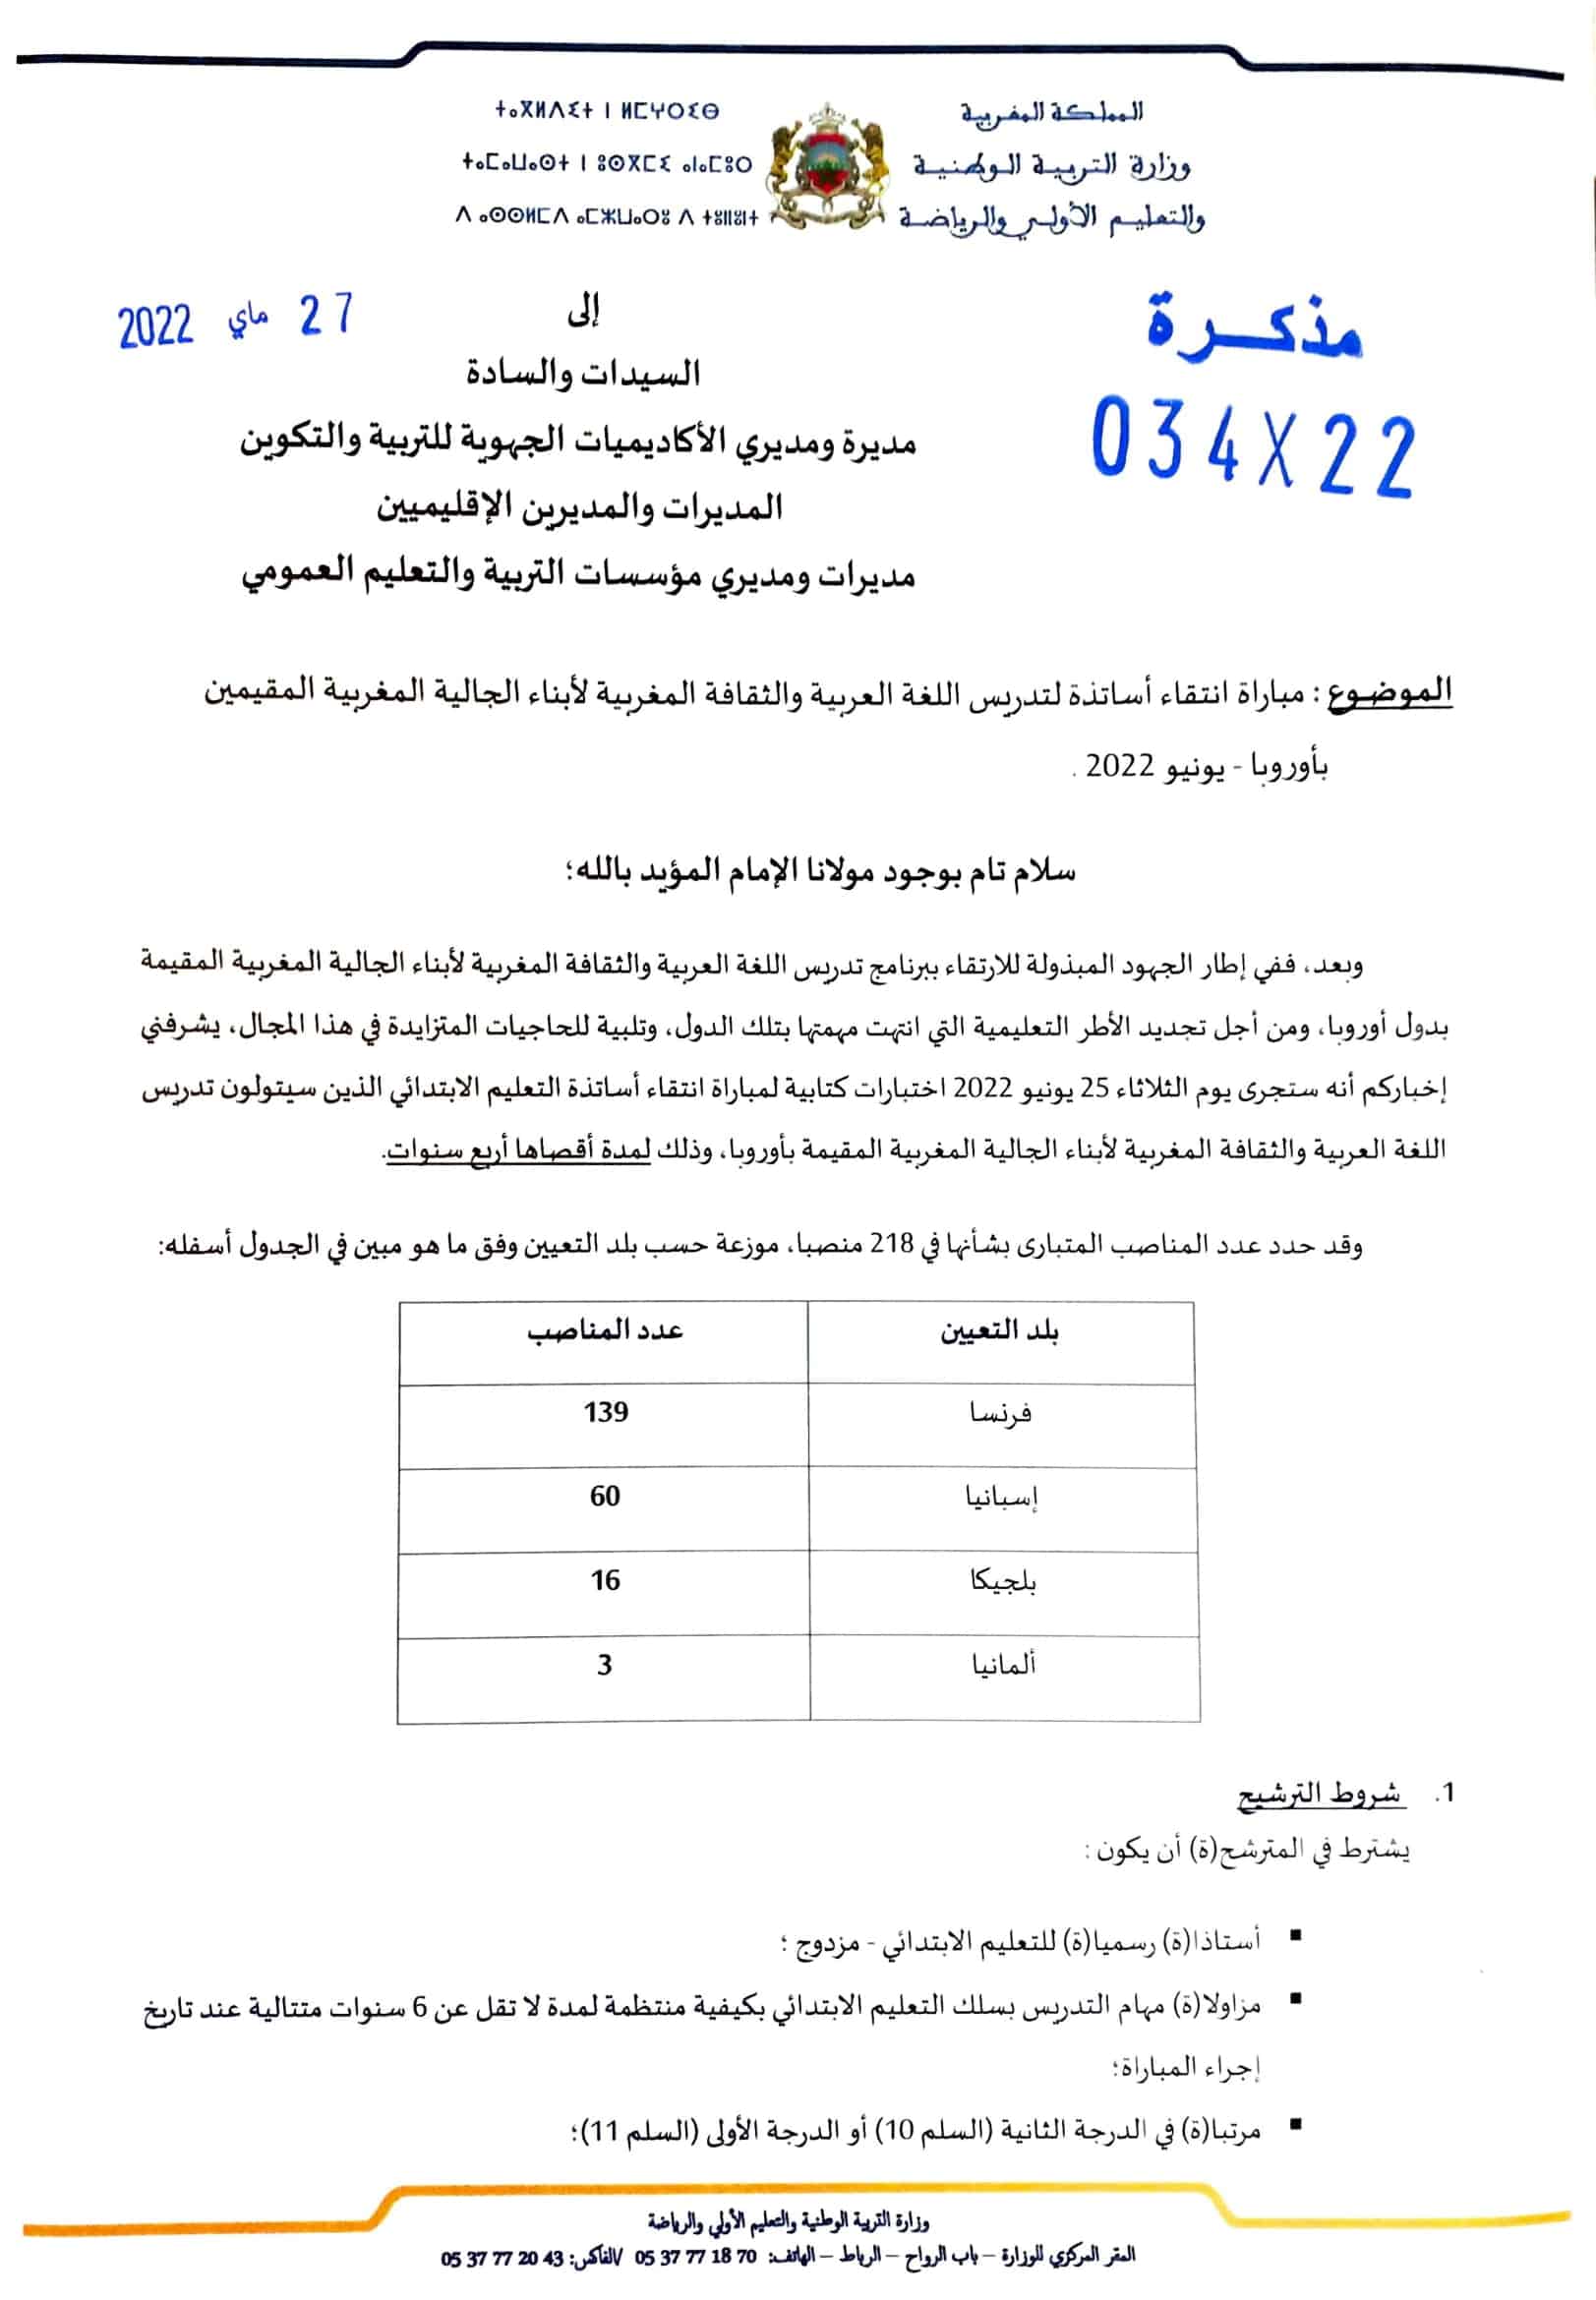 Note0342227052022 1 مباراة تدريس أبناء الجالية المغربية بأوروبا 2022